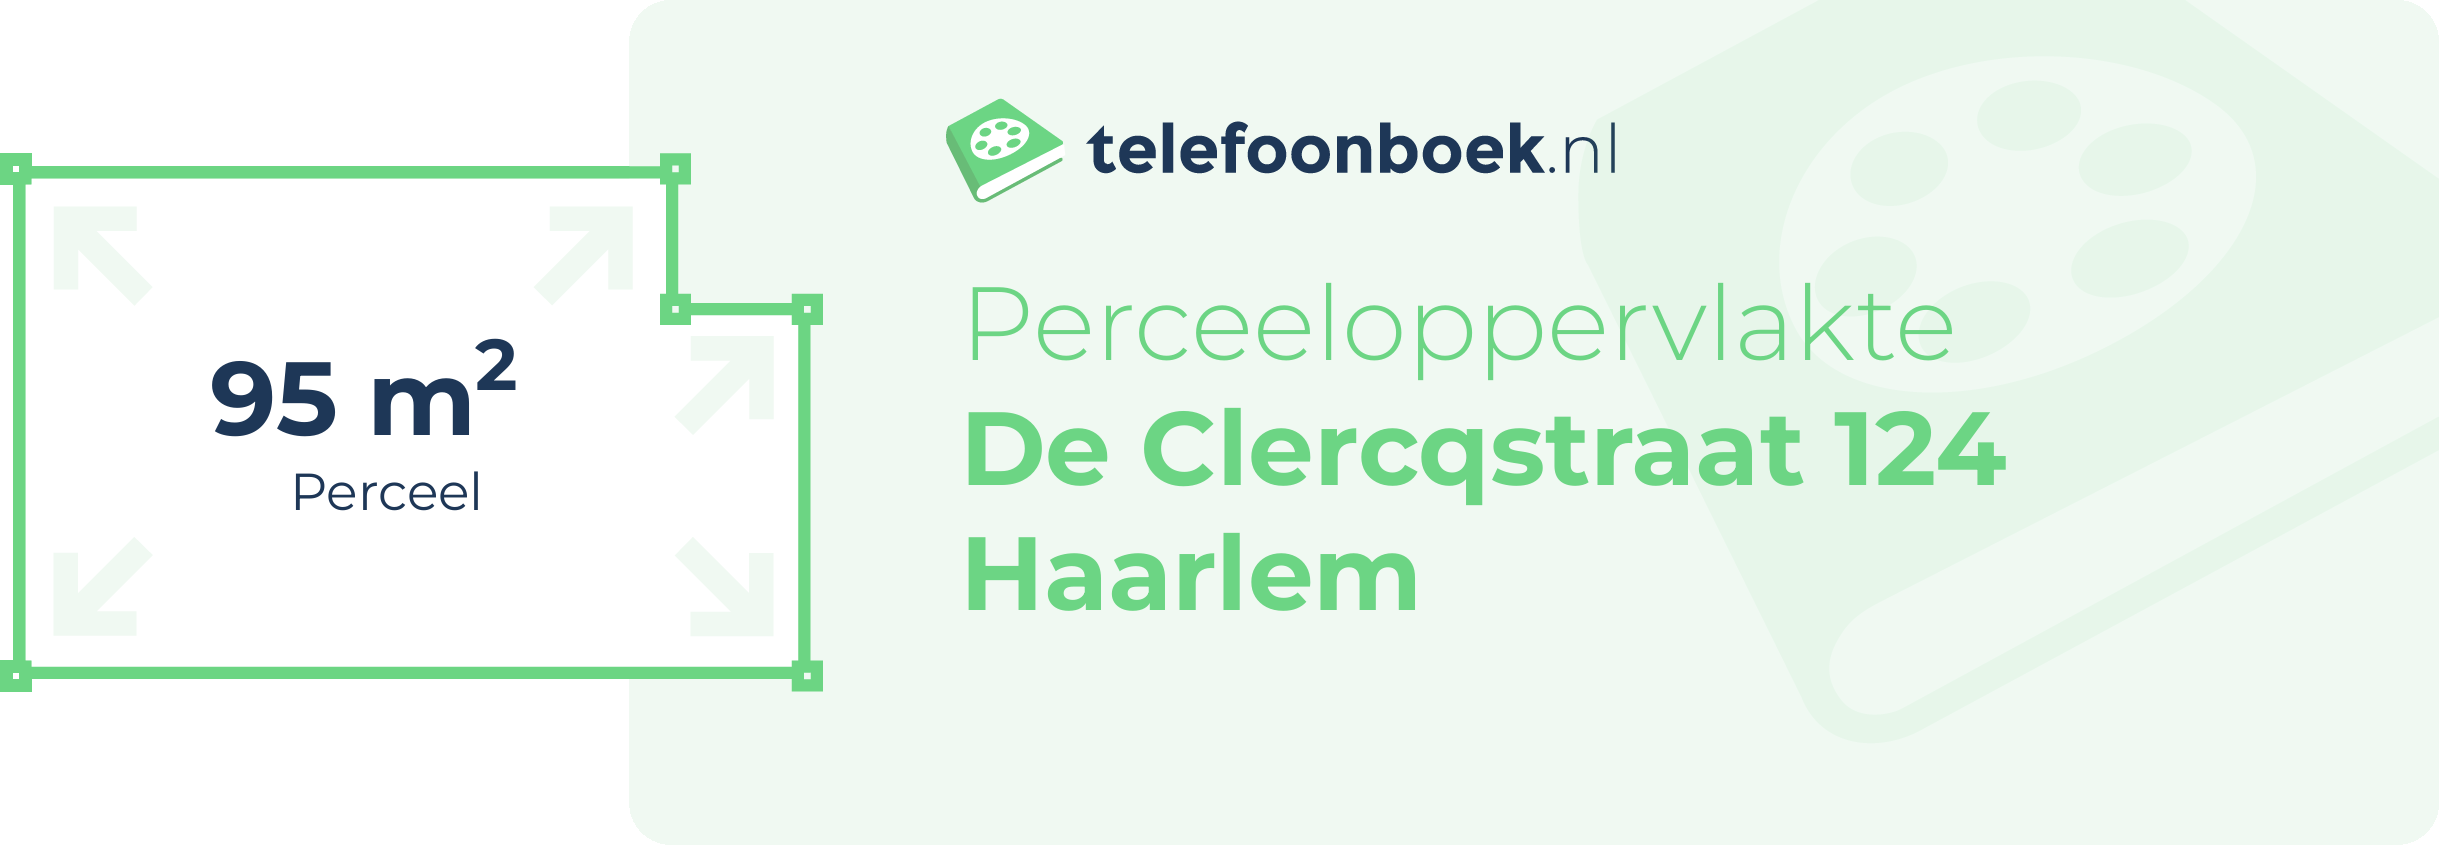 Perceeloppervlakte De Clercqstraat 124 Haarlem